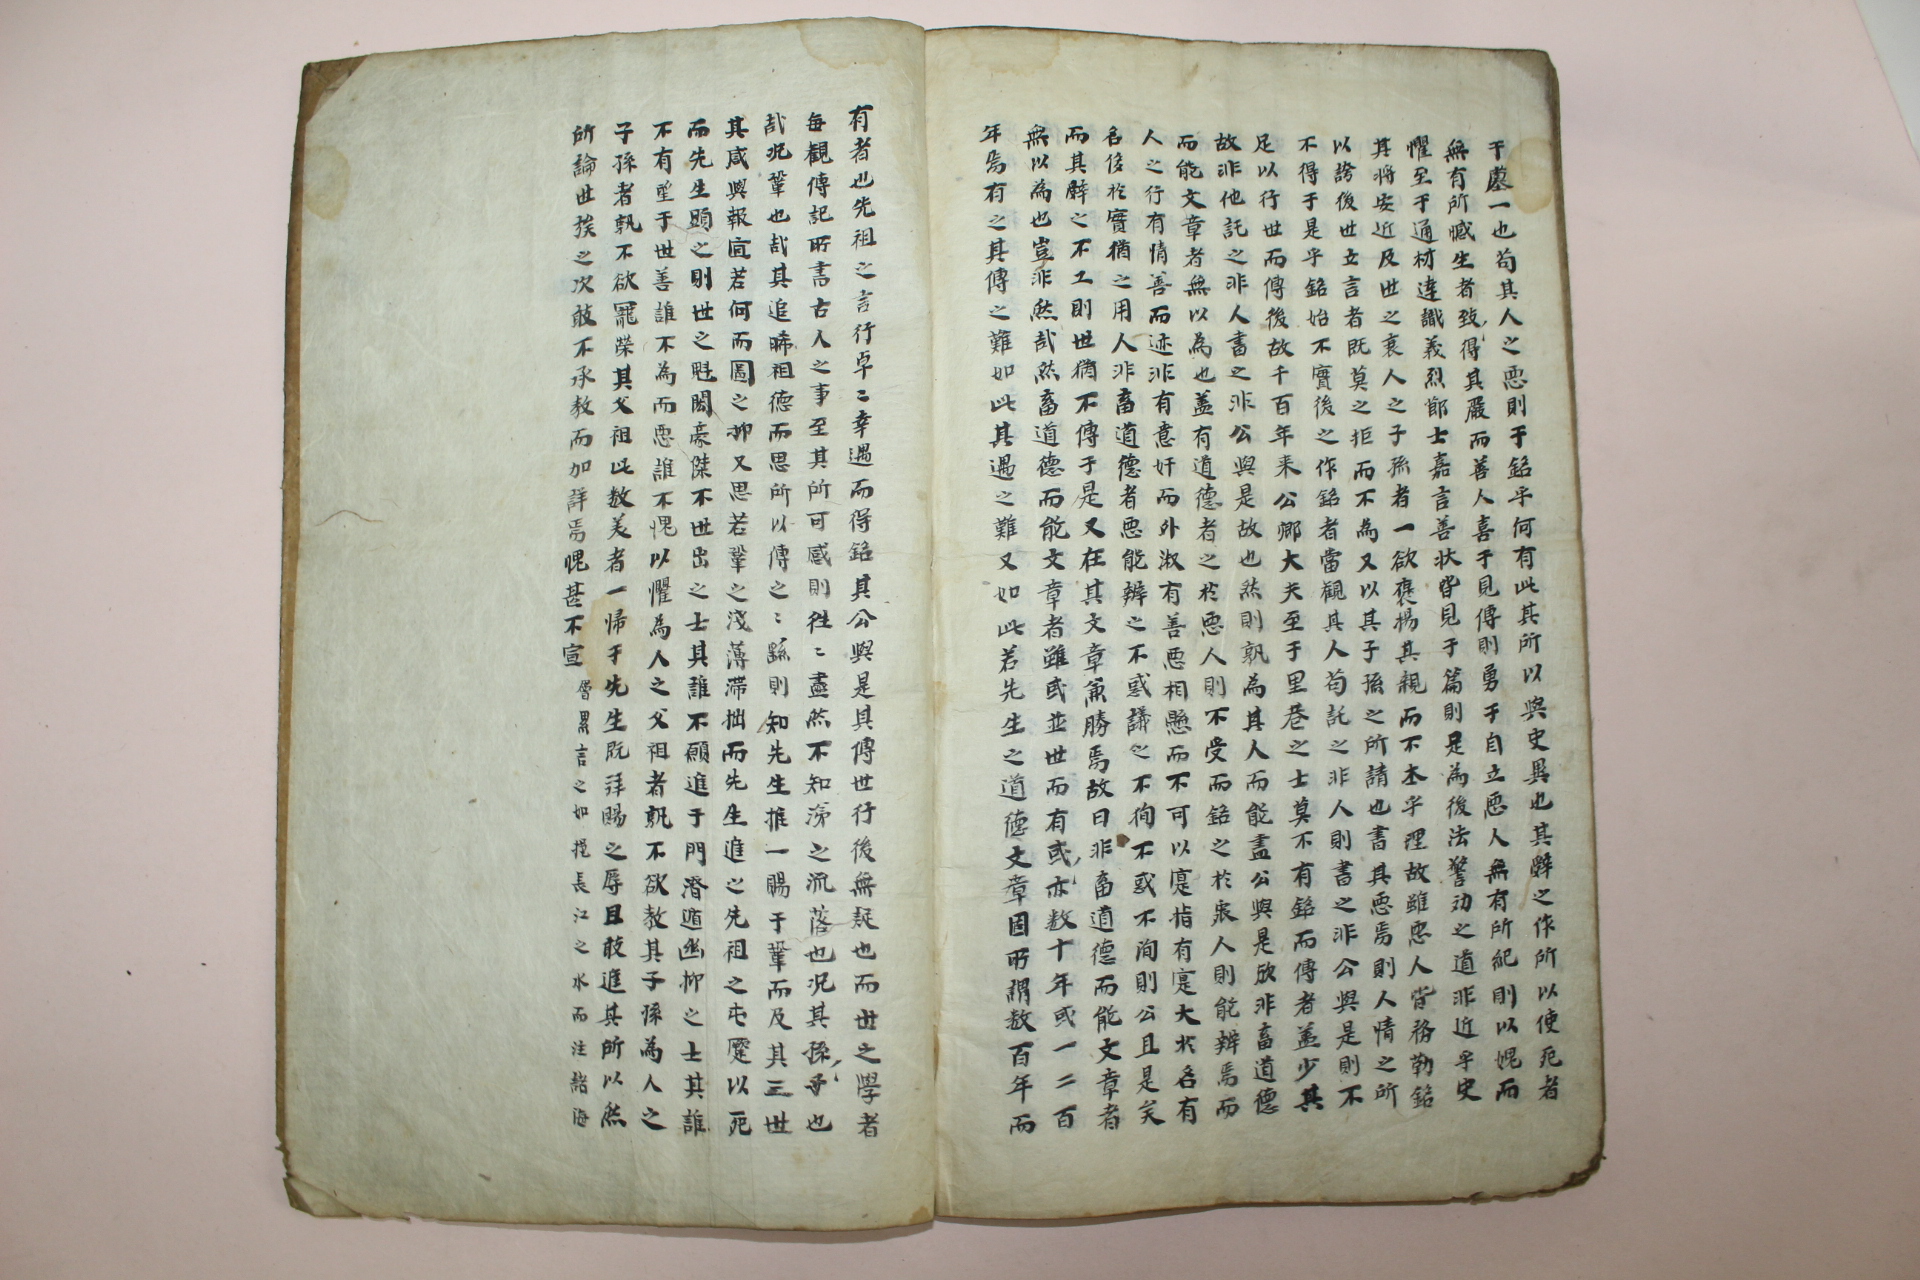 조선시대 잘정서된 고필사본 팔가류선(八家類選) 1책완질